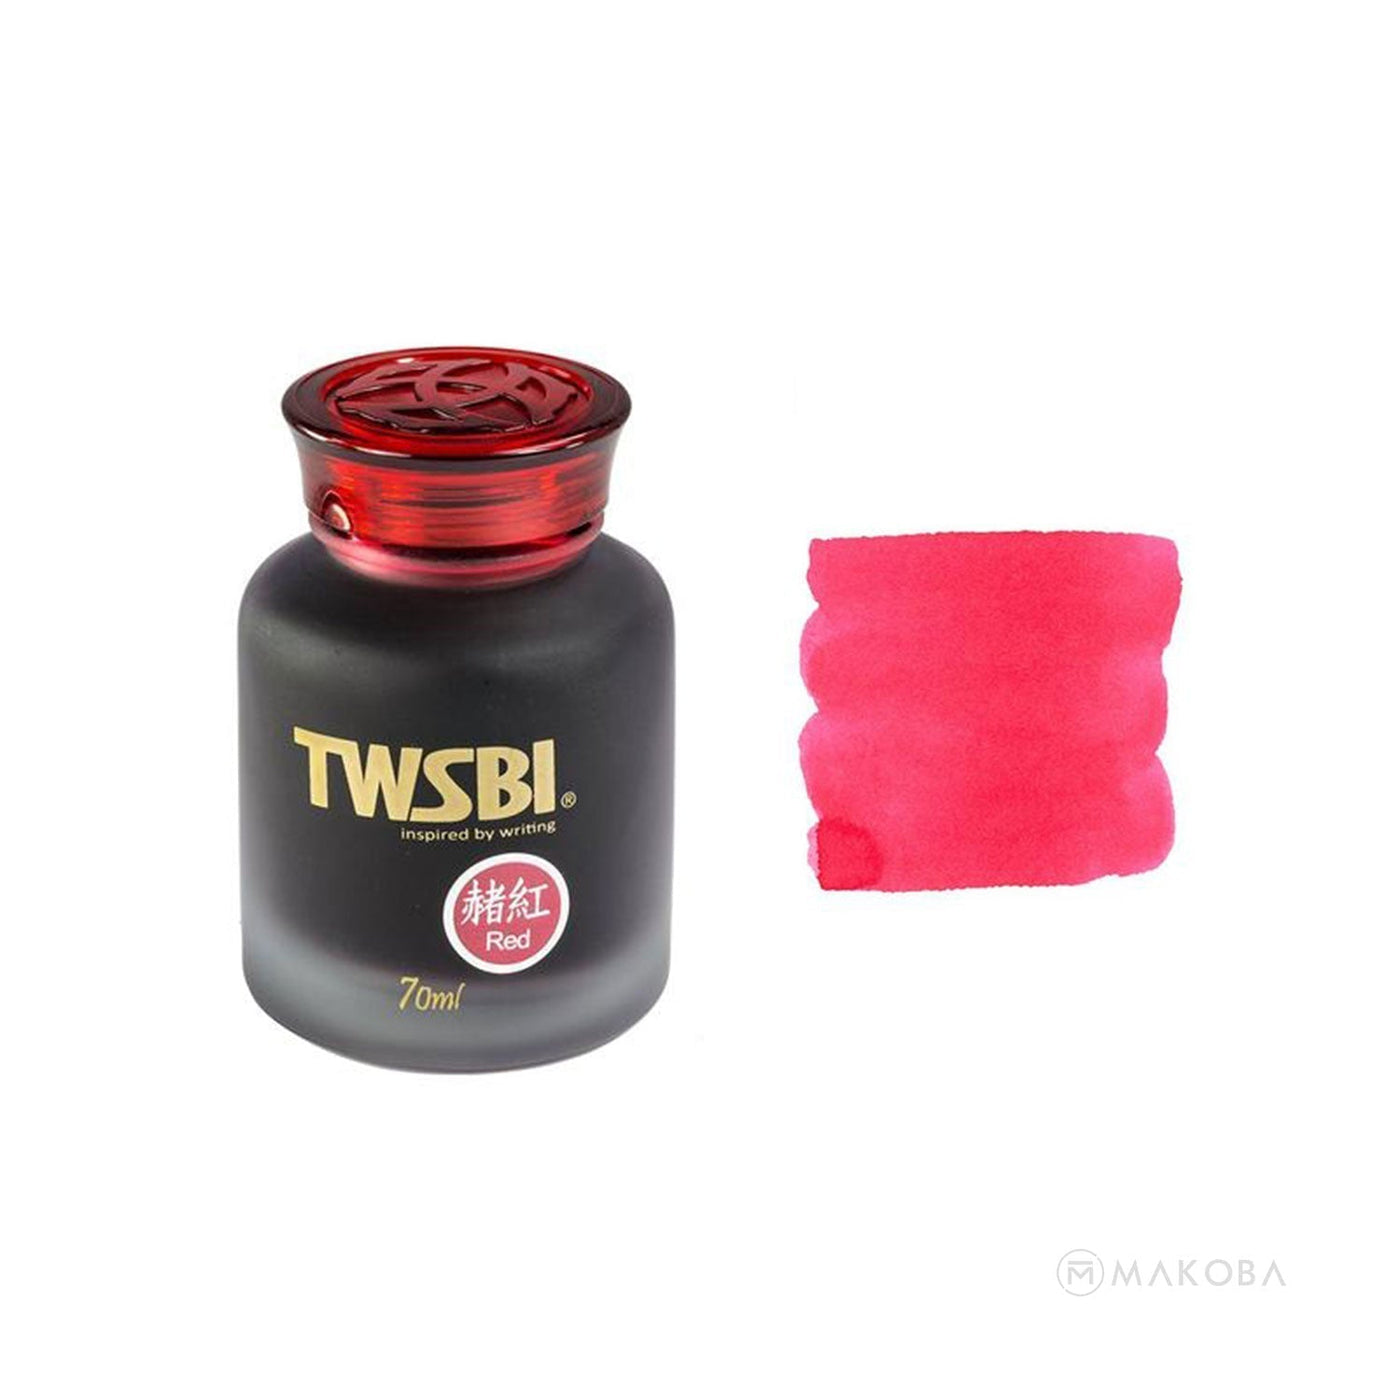 TWSBI Ink Bottle Red - 70ml